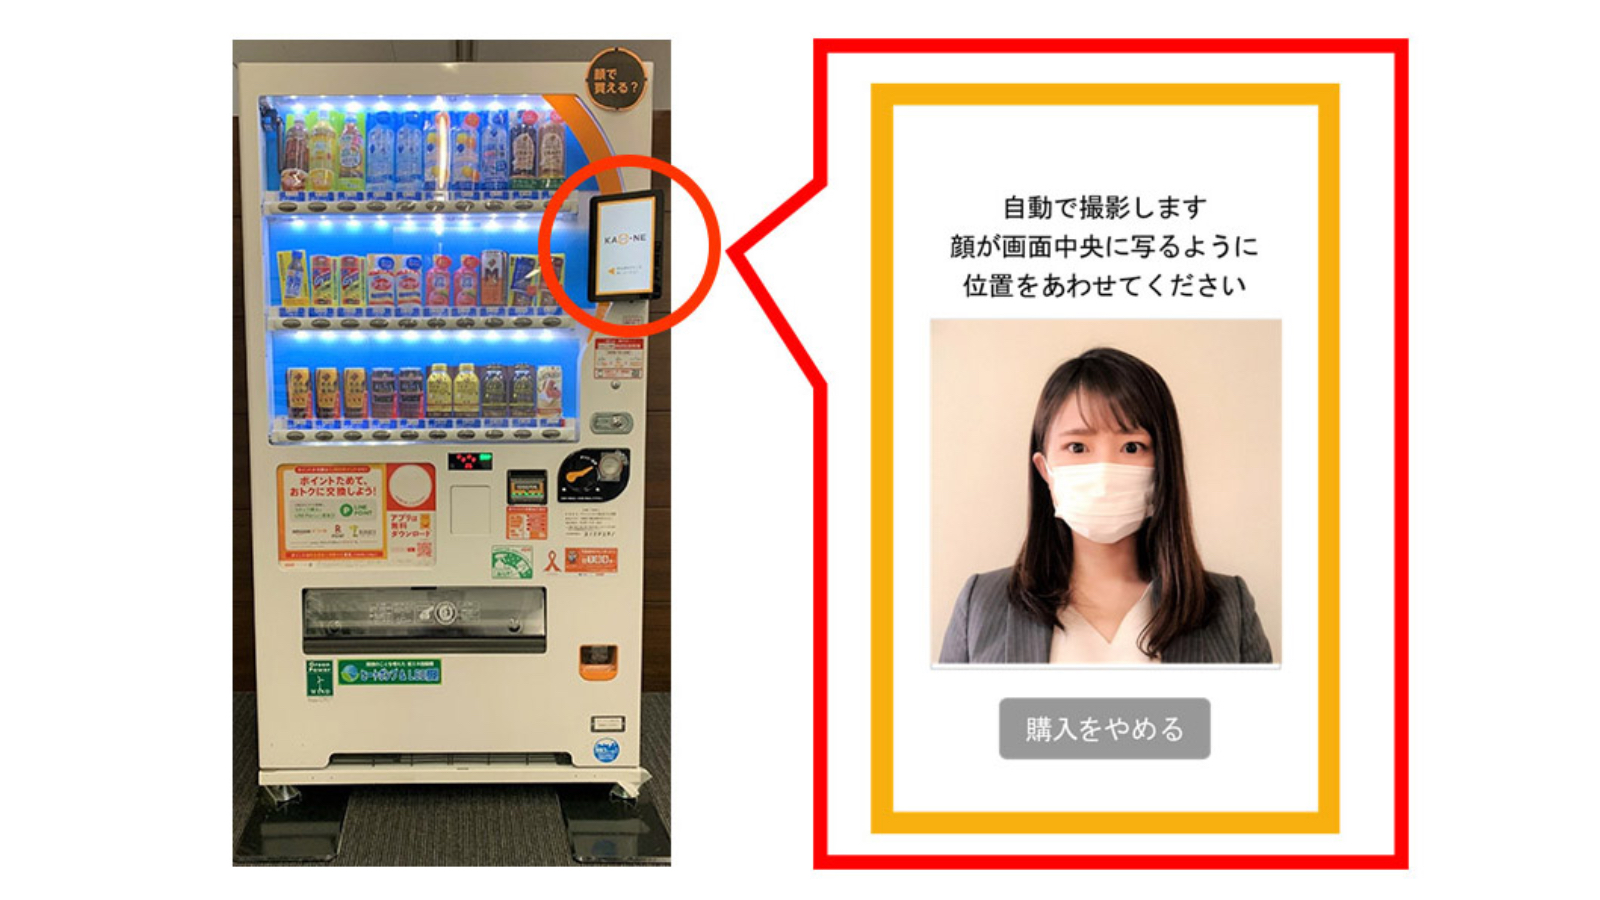 https://asienspiegel.ch/content/1-articles/2021/04/20210427-japan-getraenkeautomat-gesichtserkennung-dydo/automat-1.jpg